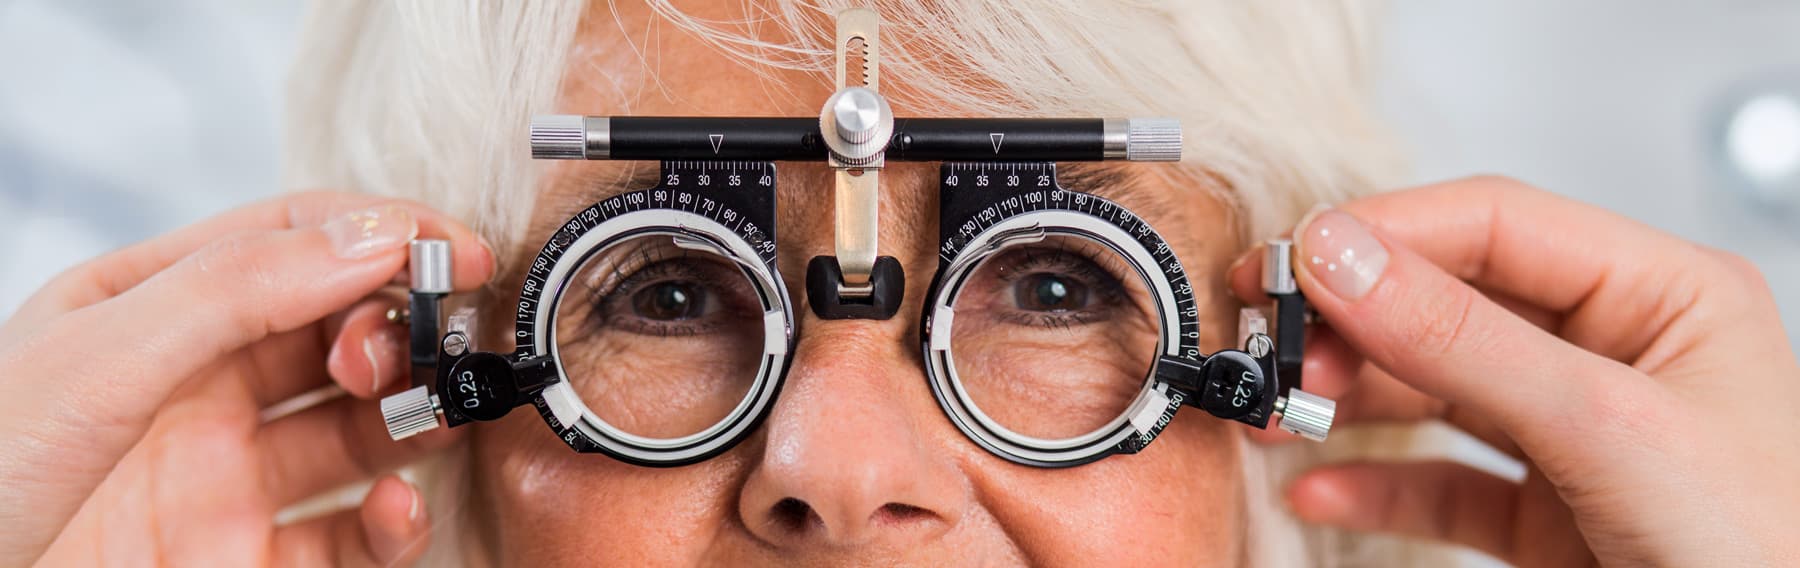 Visita nuestra óptica y apuesta por la salud de tus ojos